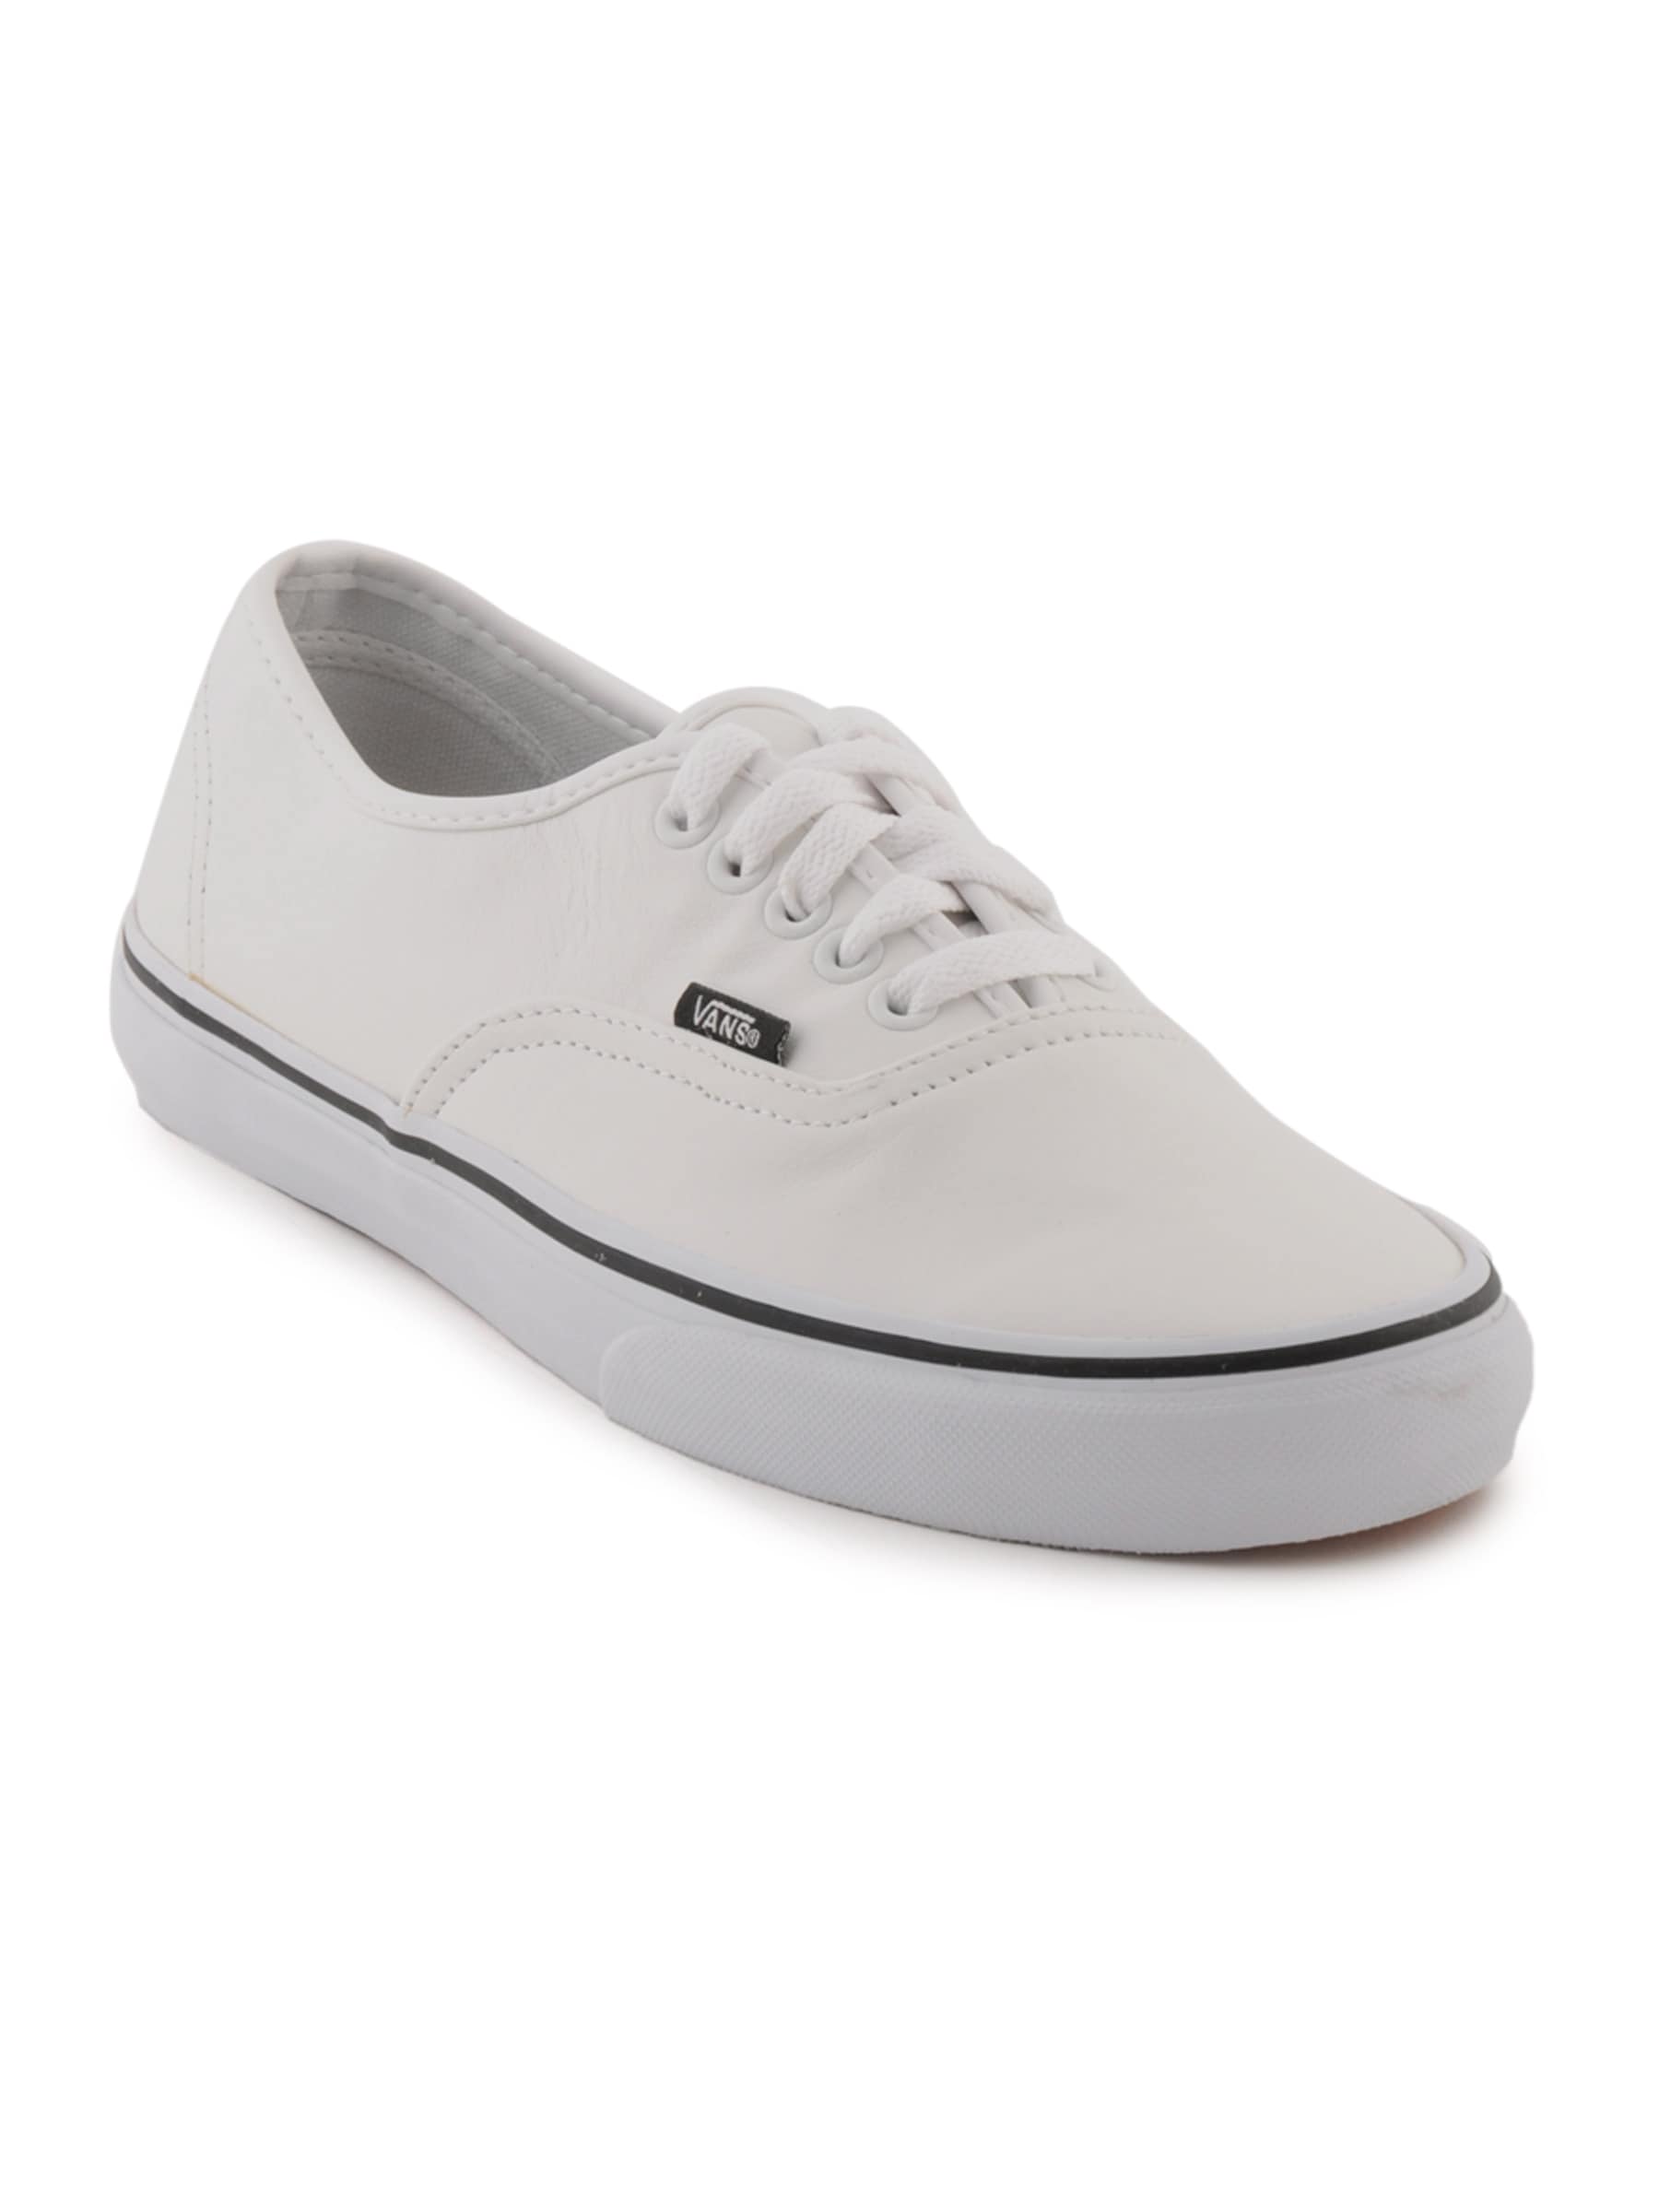 Vans Men Authentic White Casual Shoes